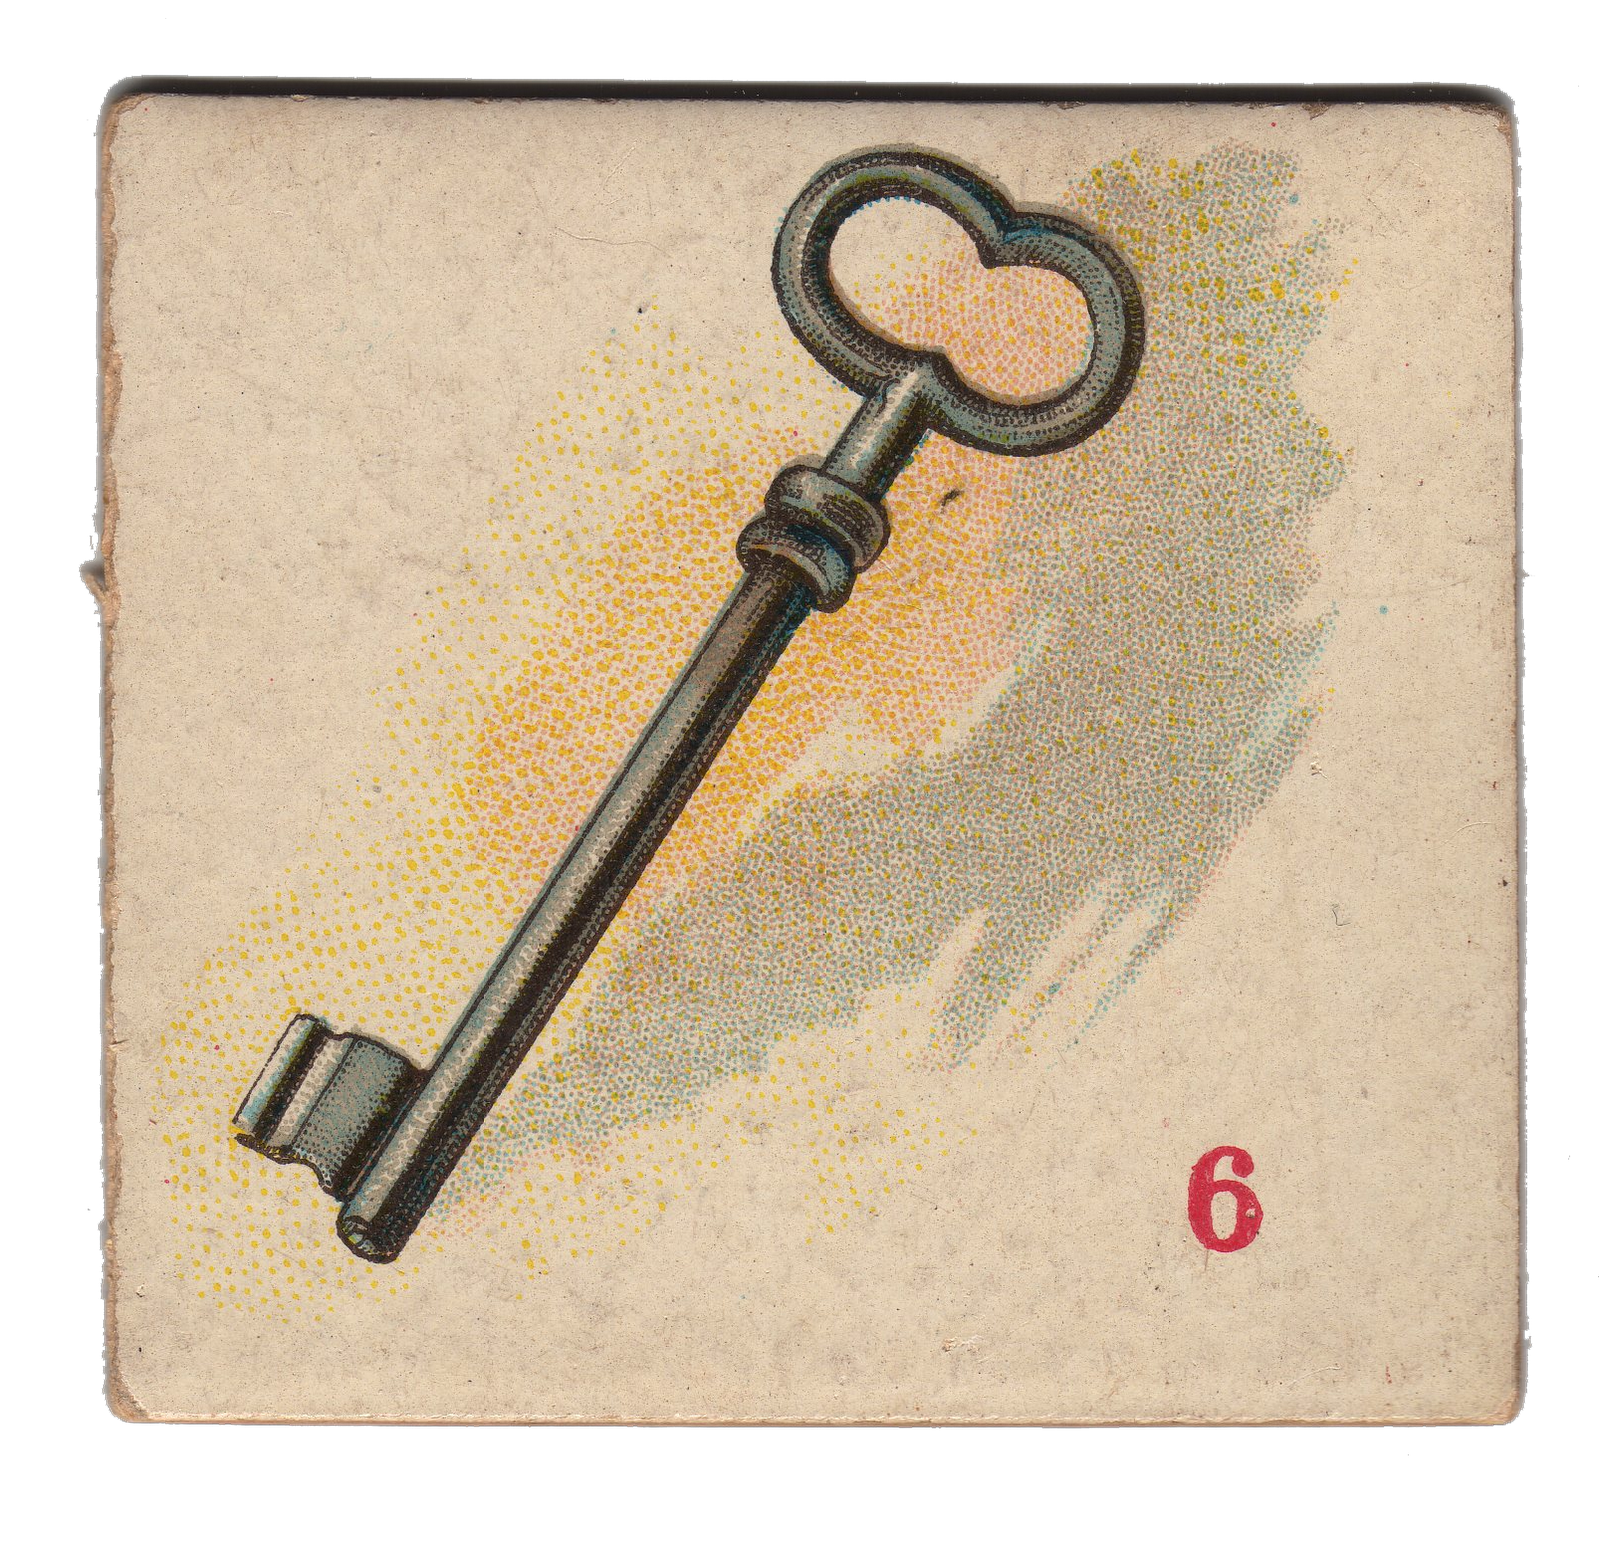 Skeleton key image